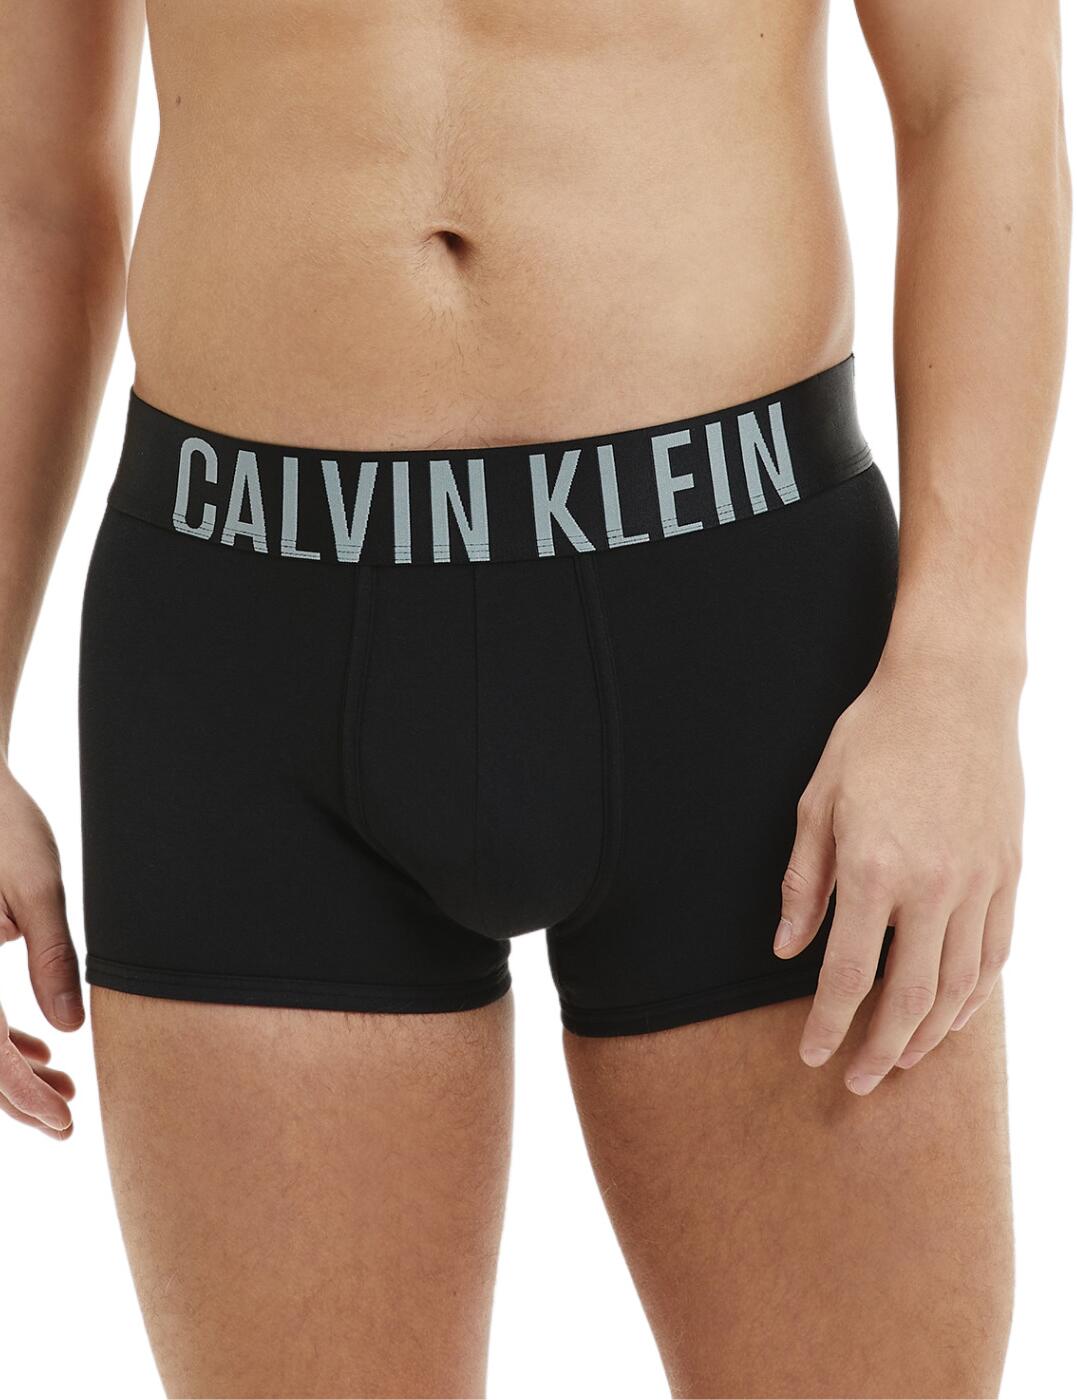 Calvin Klein Mens Intense Power Trunks 2 Pack Black